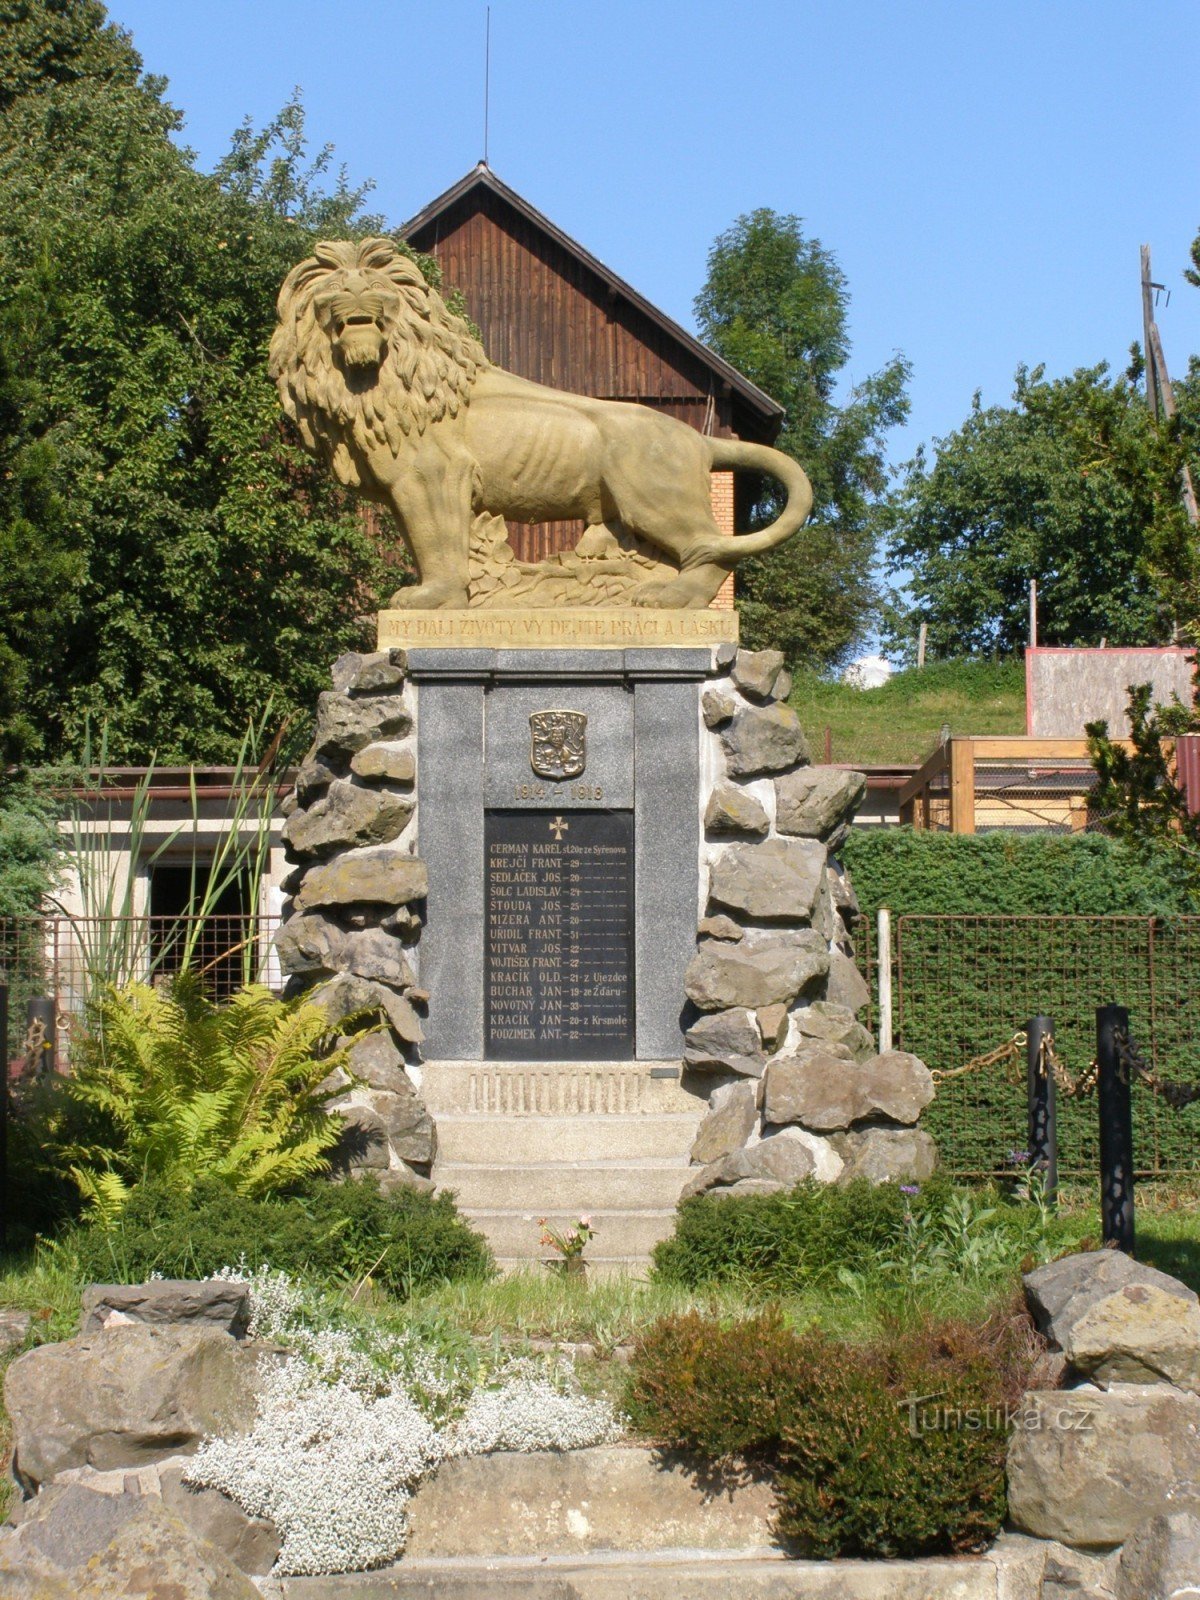 Syřenov - пам'ятник жертвам 1-ї св. війни